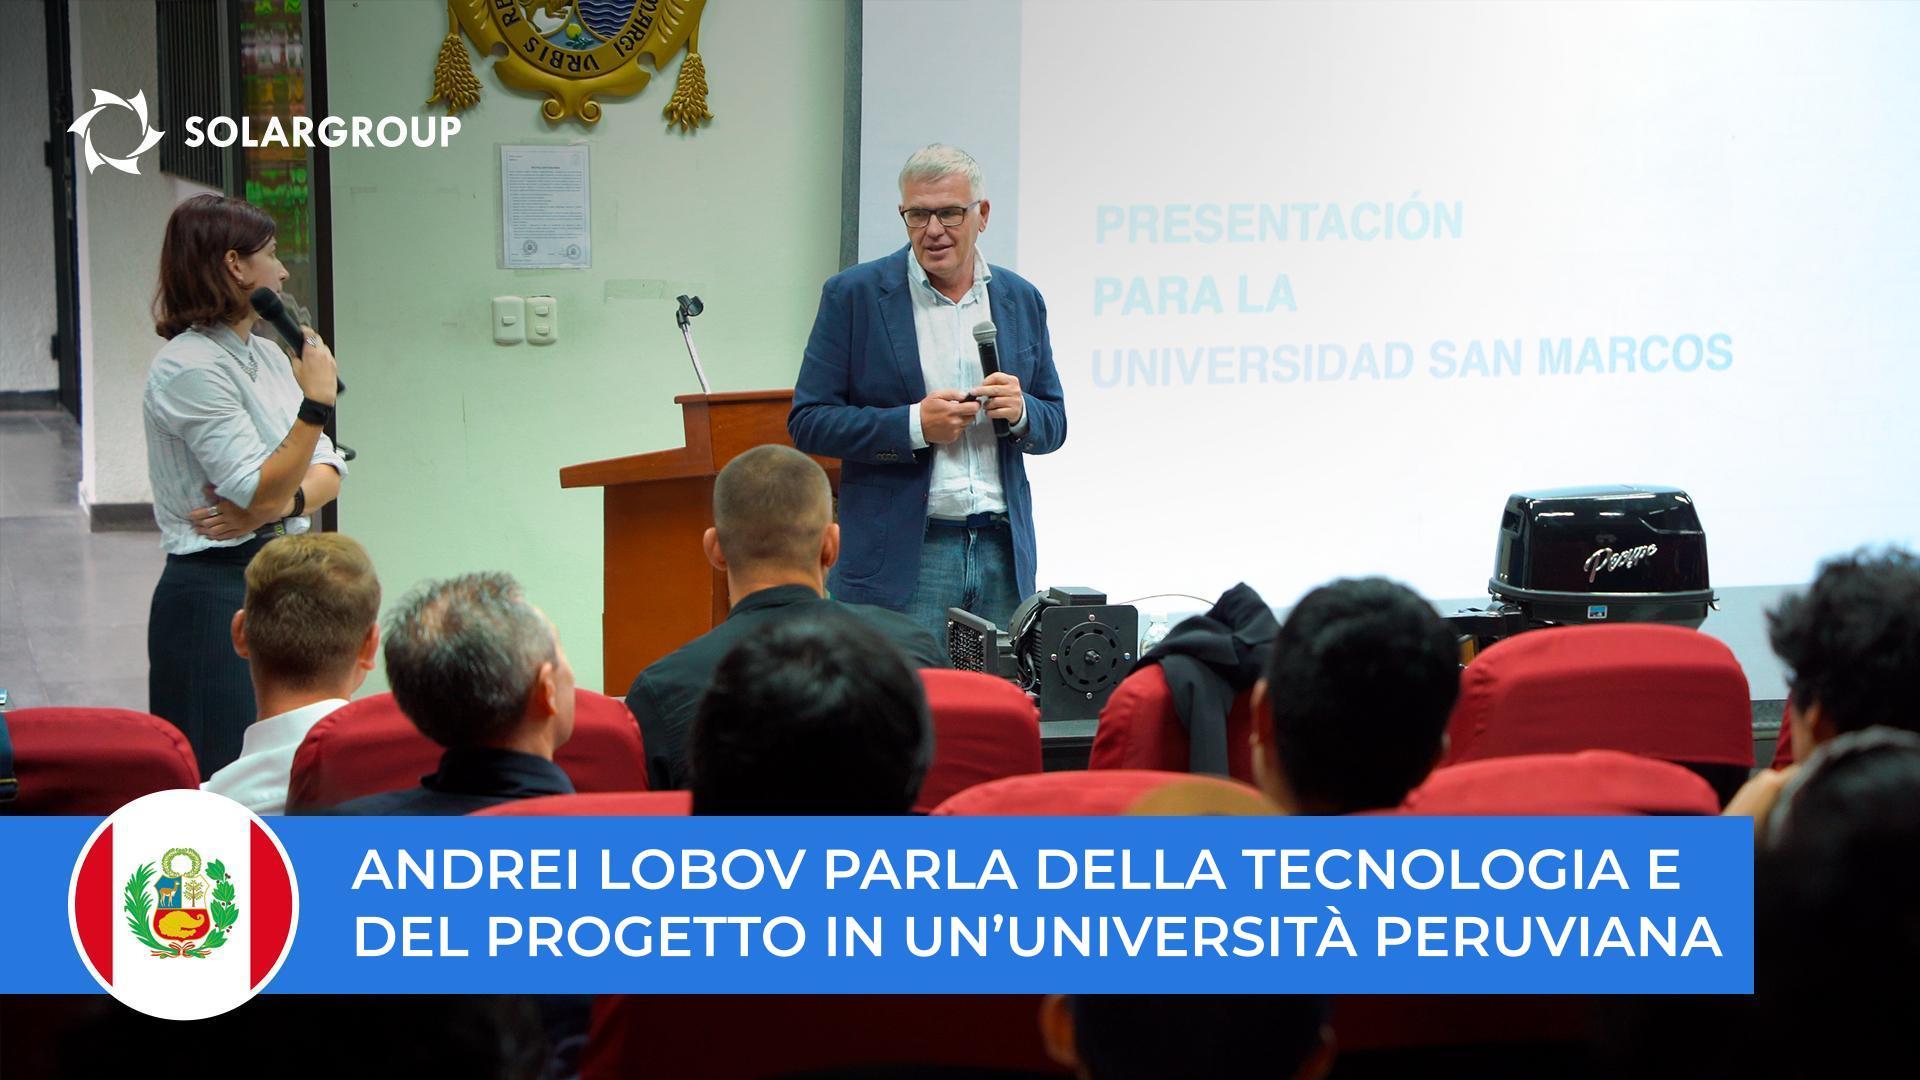 Andrei Lobov parla della tecnologia e del progetto a studenti e professori dell'università San Marcos